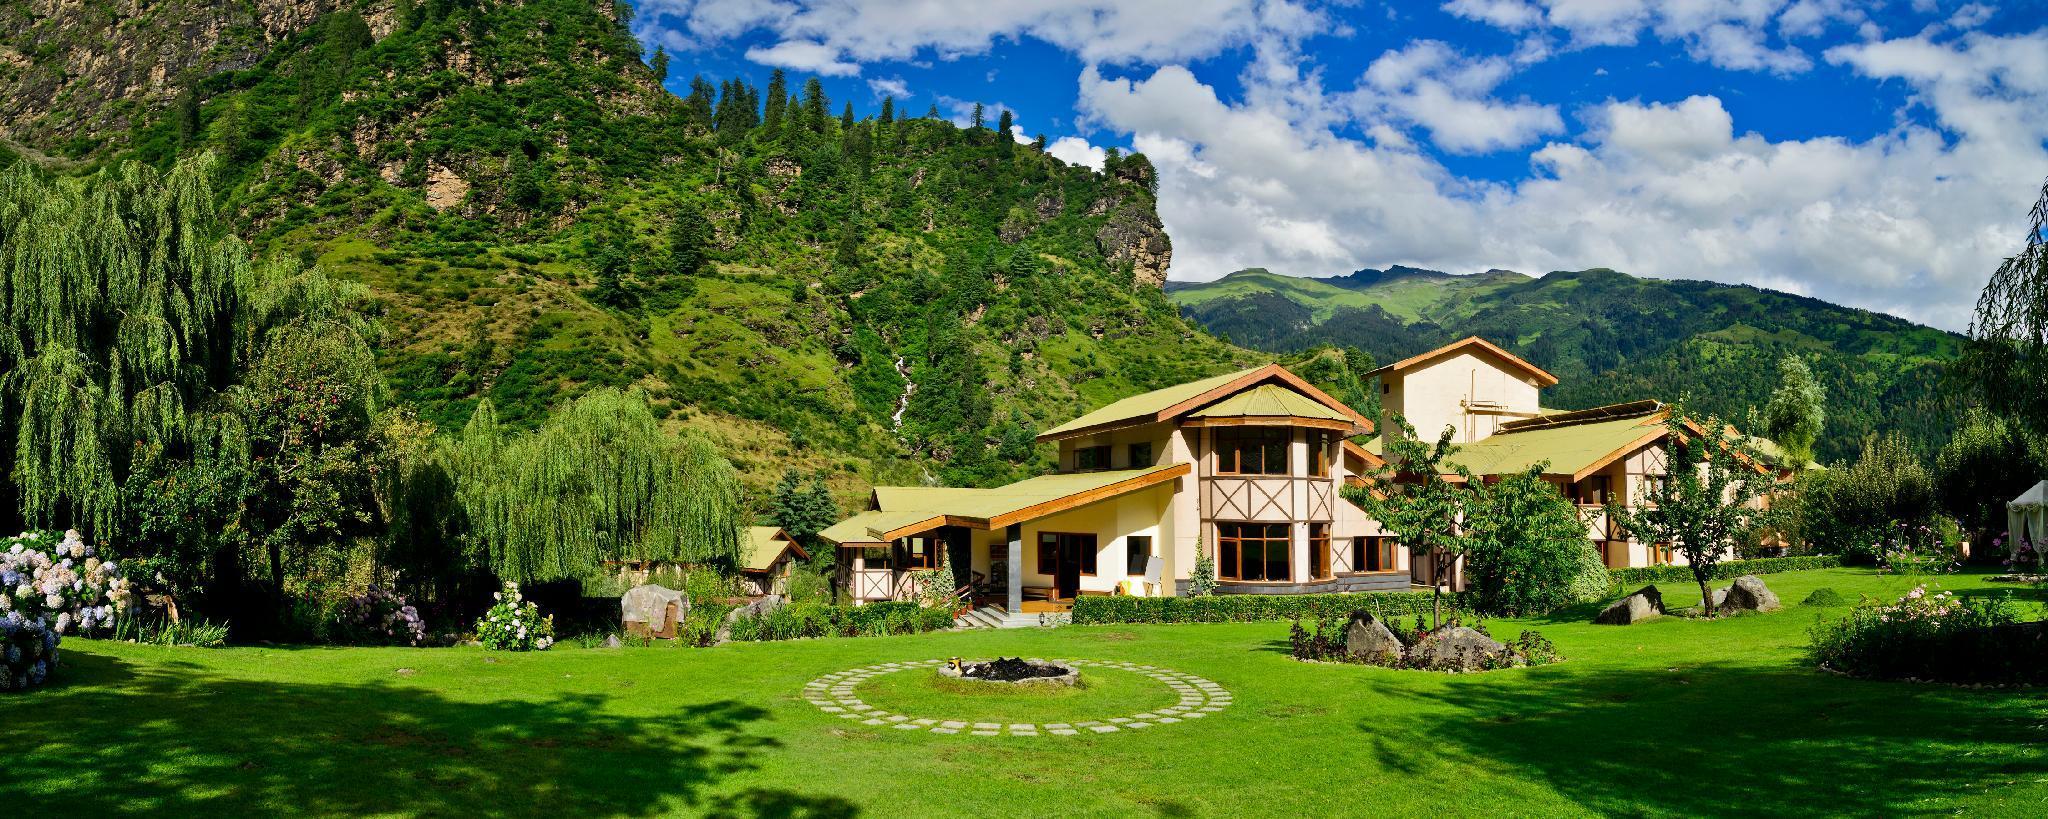 Solang Valley Resort - 喜馬偕爾邦